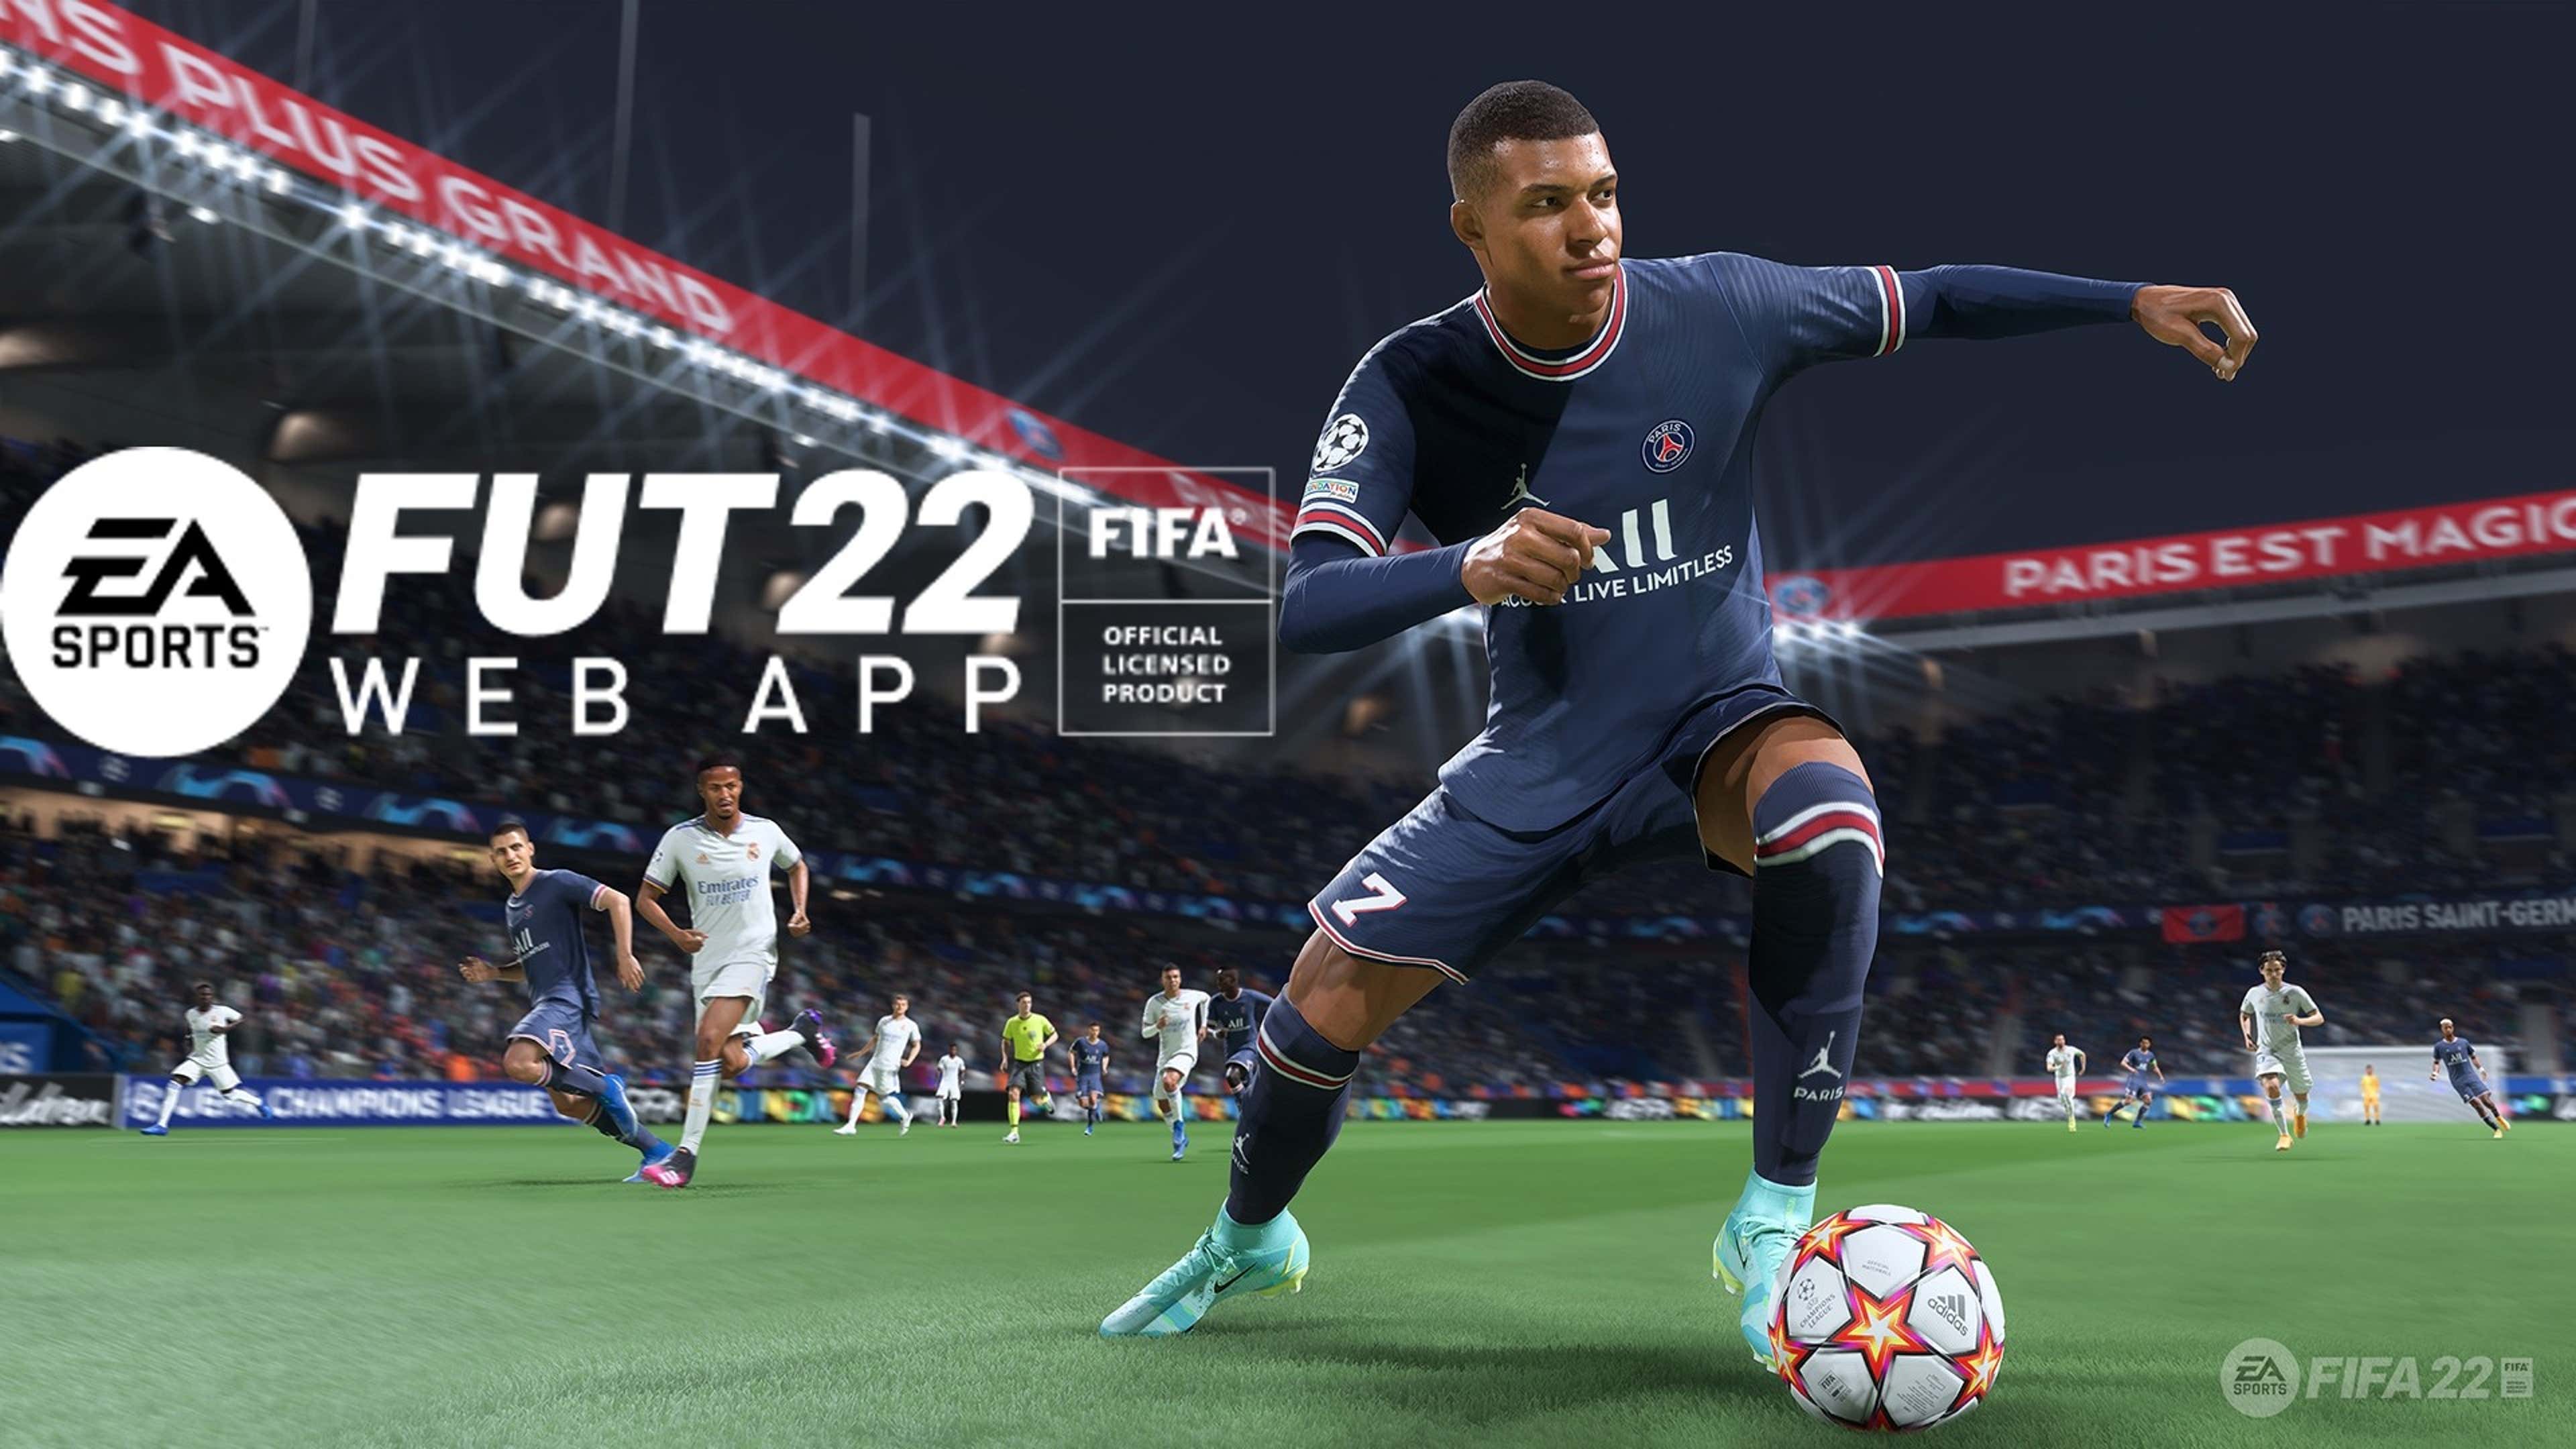 BREAKING* FIFA 22 Web App & Companion App release date CONFIRMED